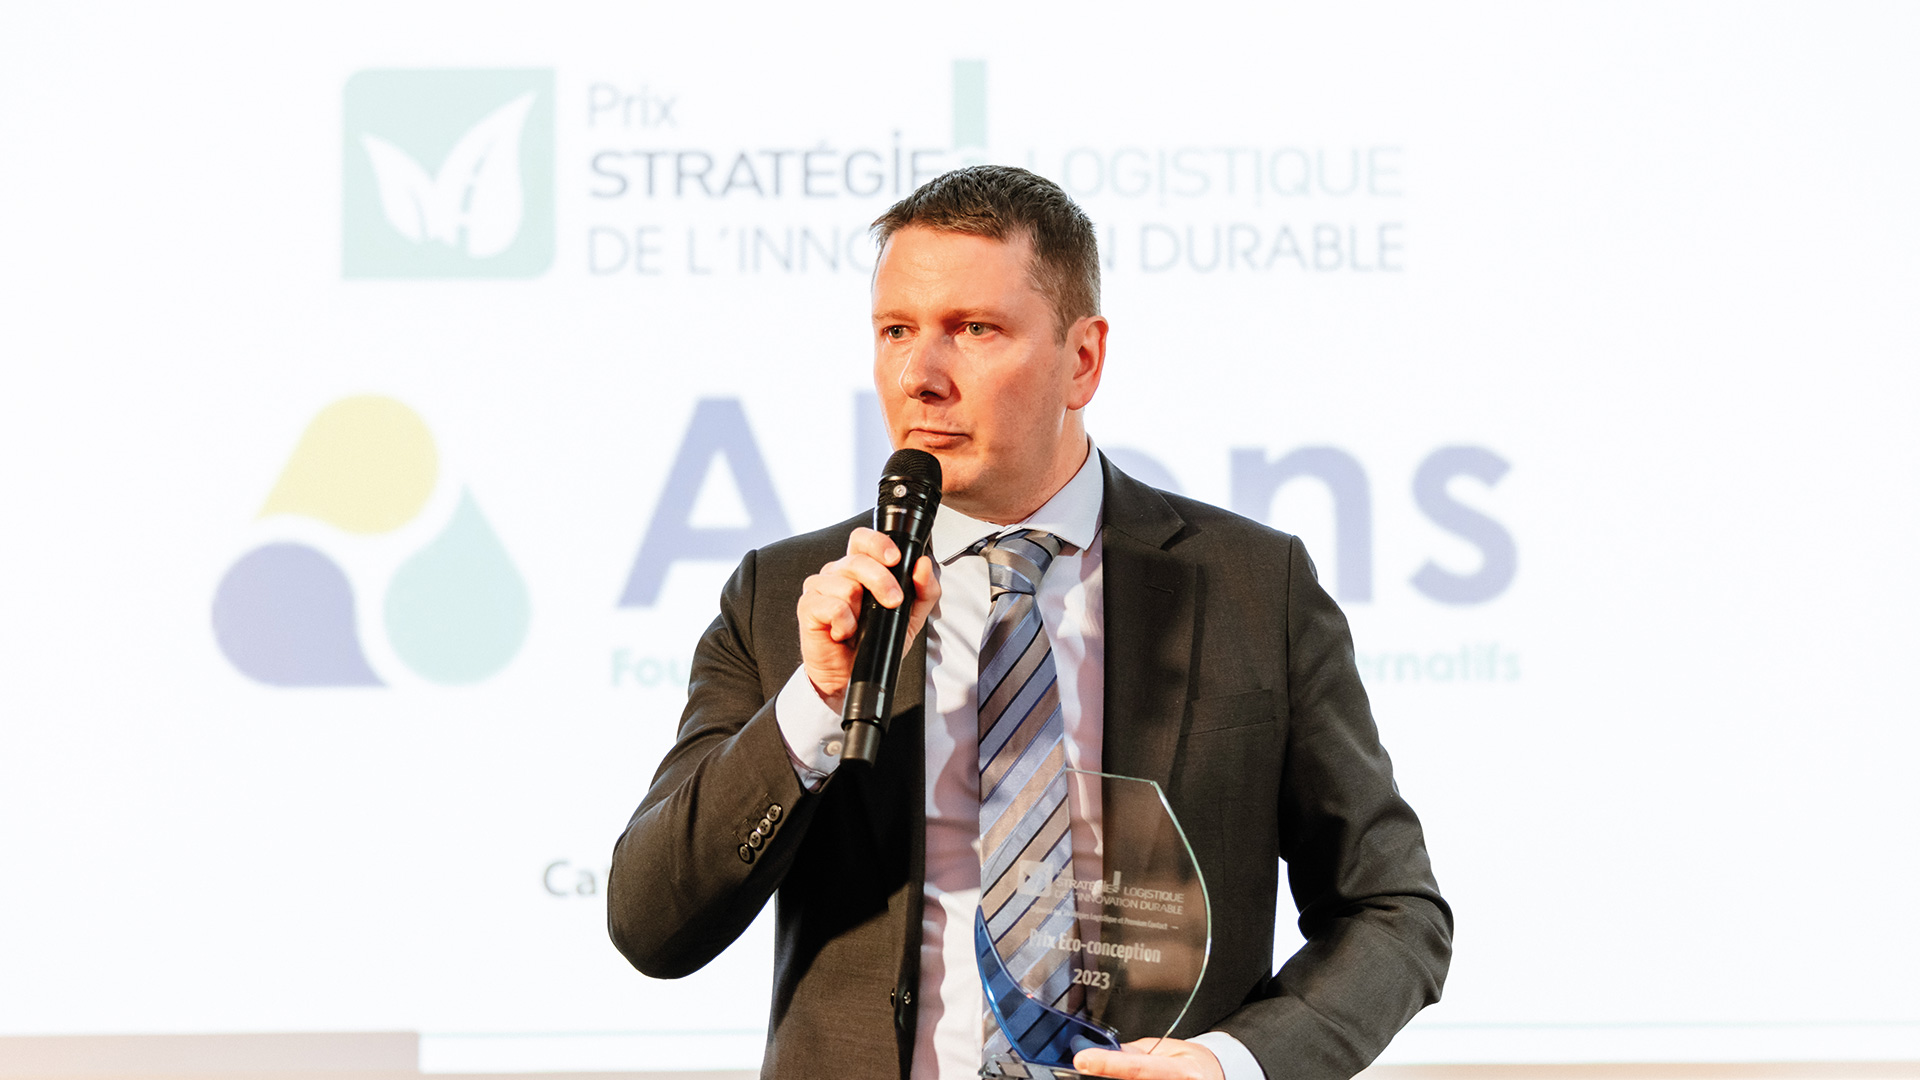 Etienne Valtel directeur général d'Altens recevant le prix stratégie logistique de l'innovation durable catégorie eco conception à eco class logistics